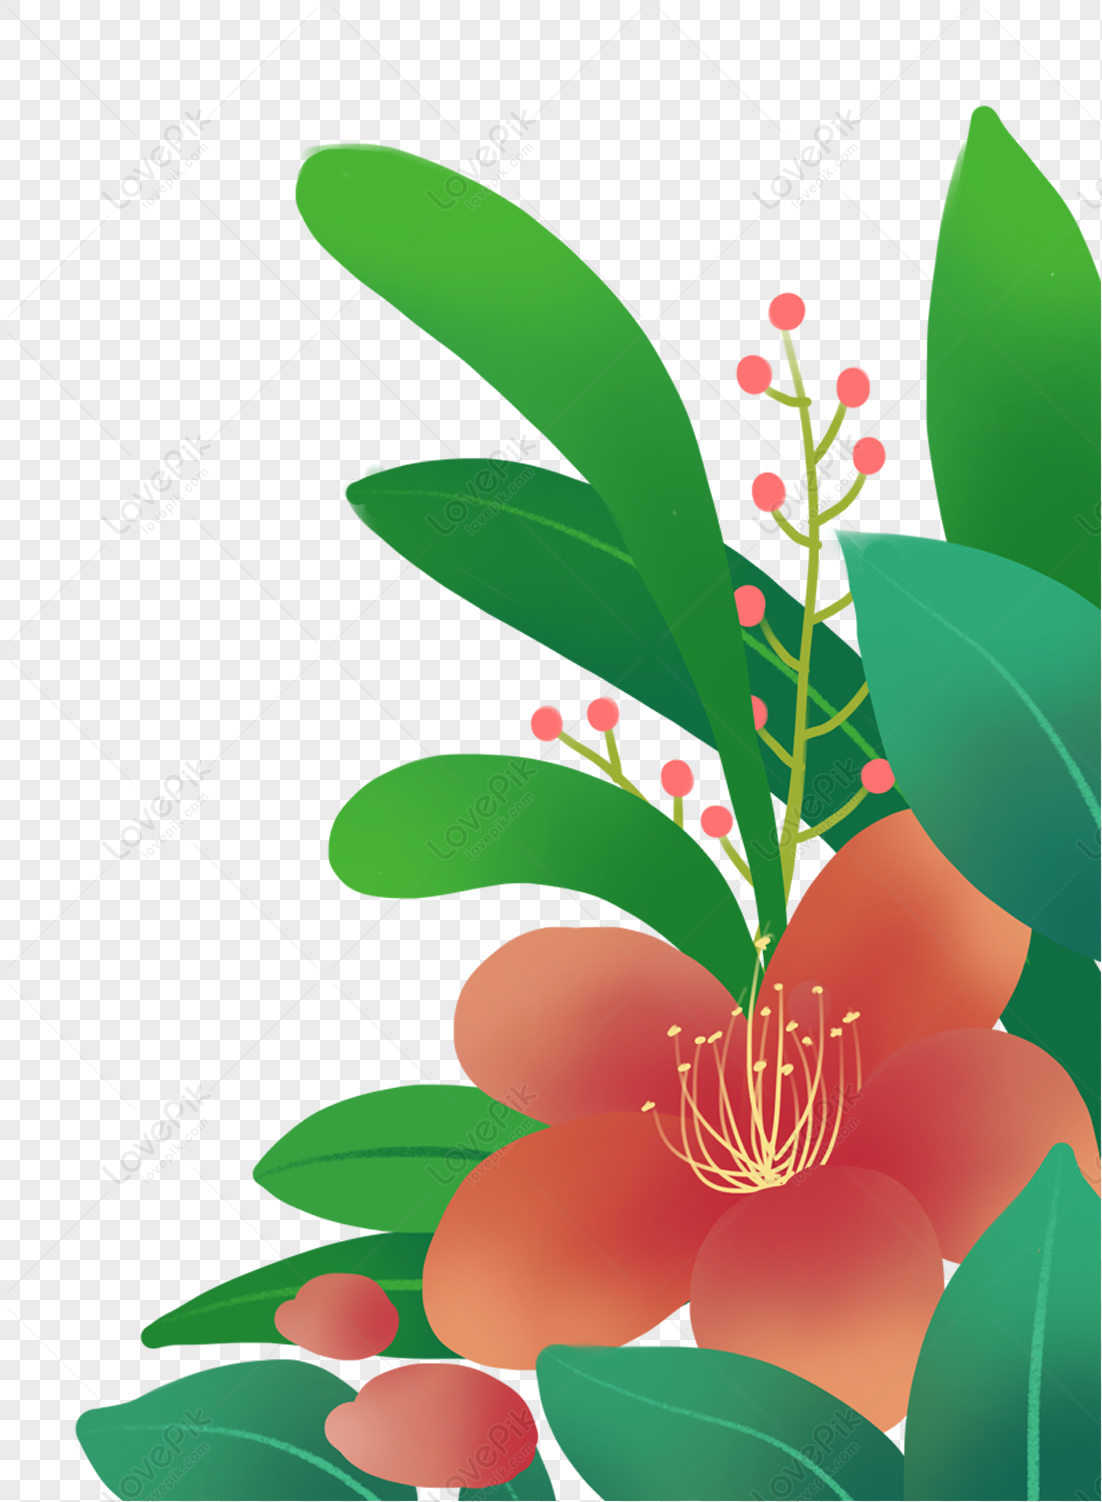 Bông hoa PNG: Với những tín đồ làm ảnh, bông hoa PNG sẽ là một nguồn tài nguyên vô cùng hữu ích. Được cắt chỉnh xác từ hình ảnh gốc, bông hoa PNG mang lại rất nhiều lợi ích cho người dùng. Hãy đón chào những bông hoa đầy màu sắc và sự đa dạng của chúng.